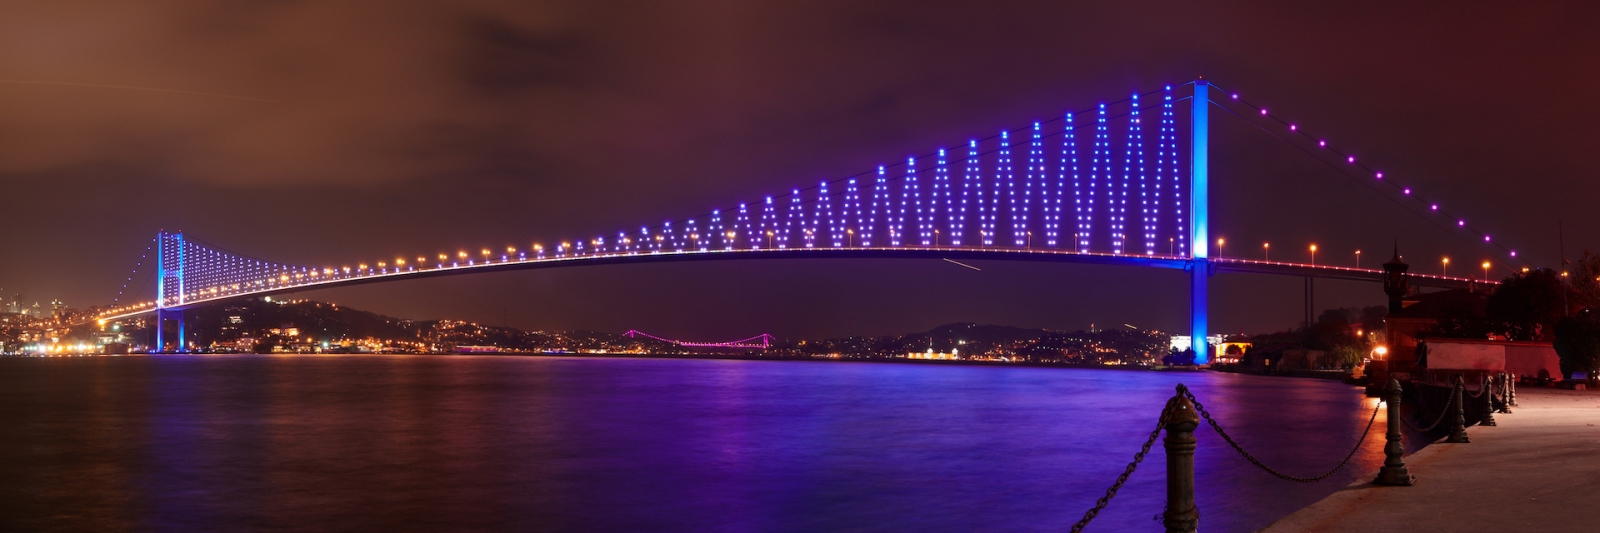 Освещение Босфорского моста ночью в Стамбуле